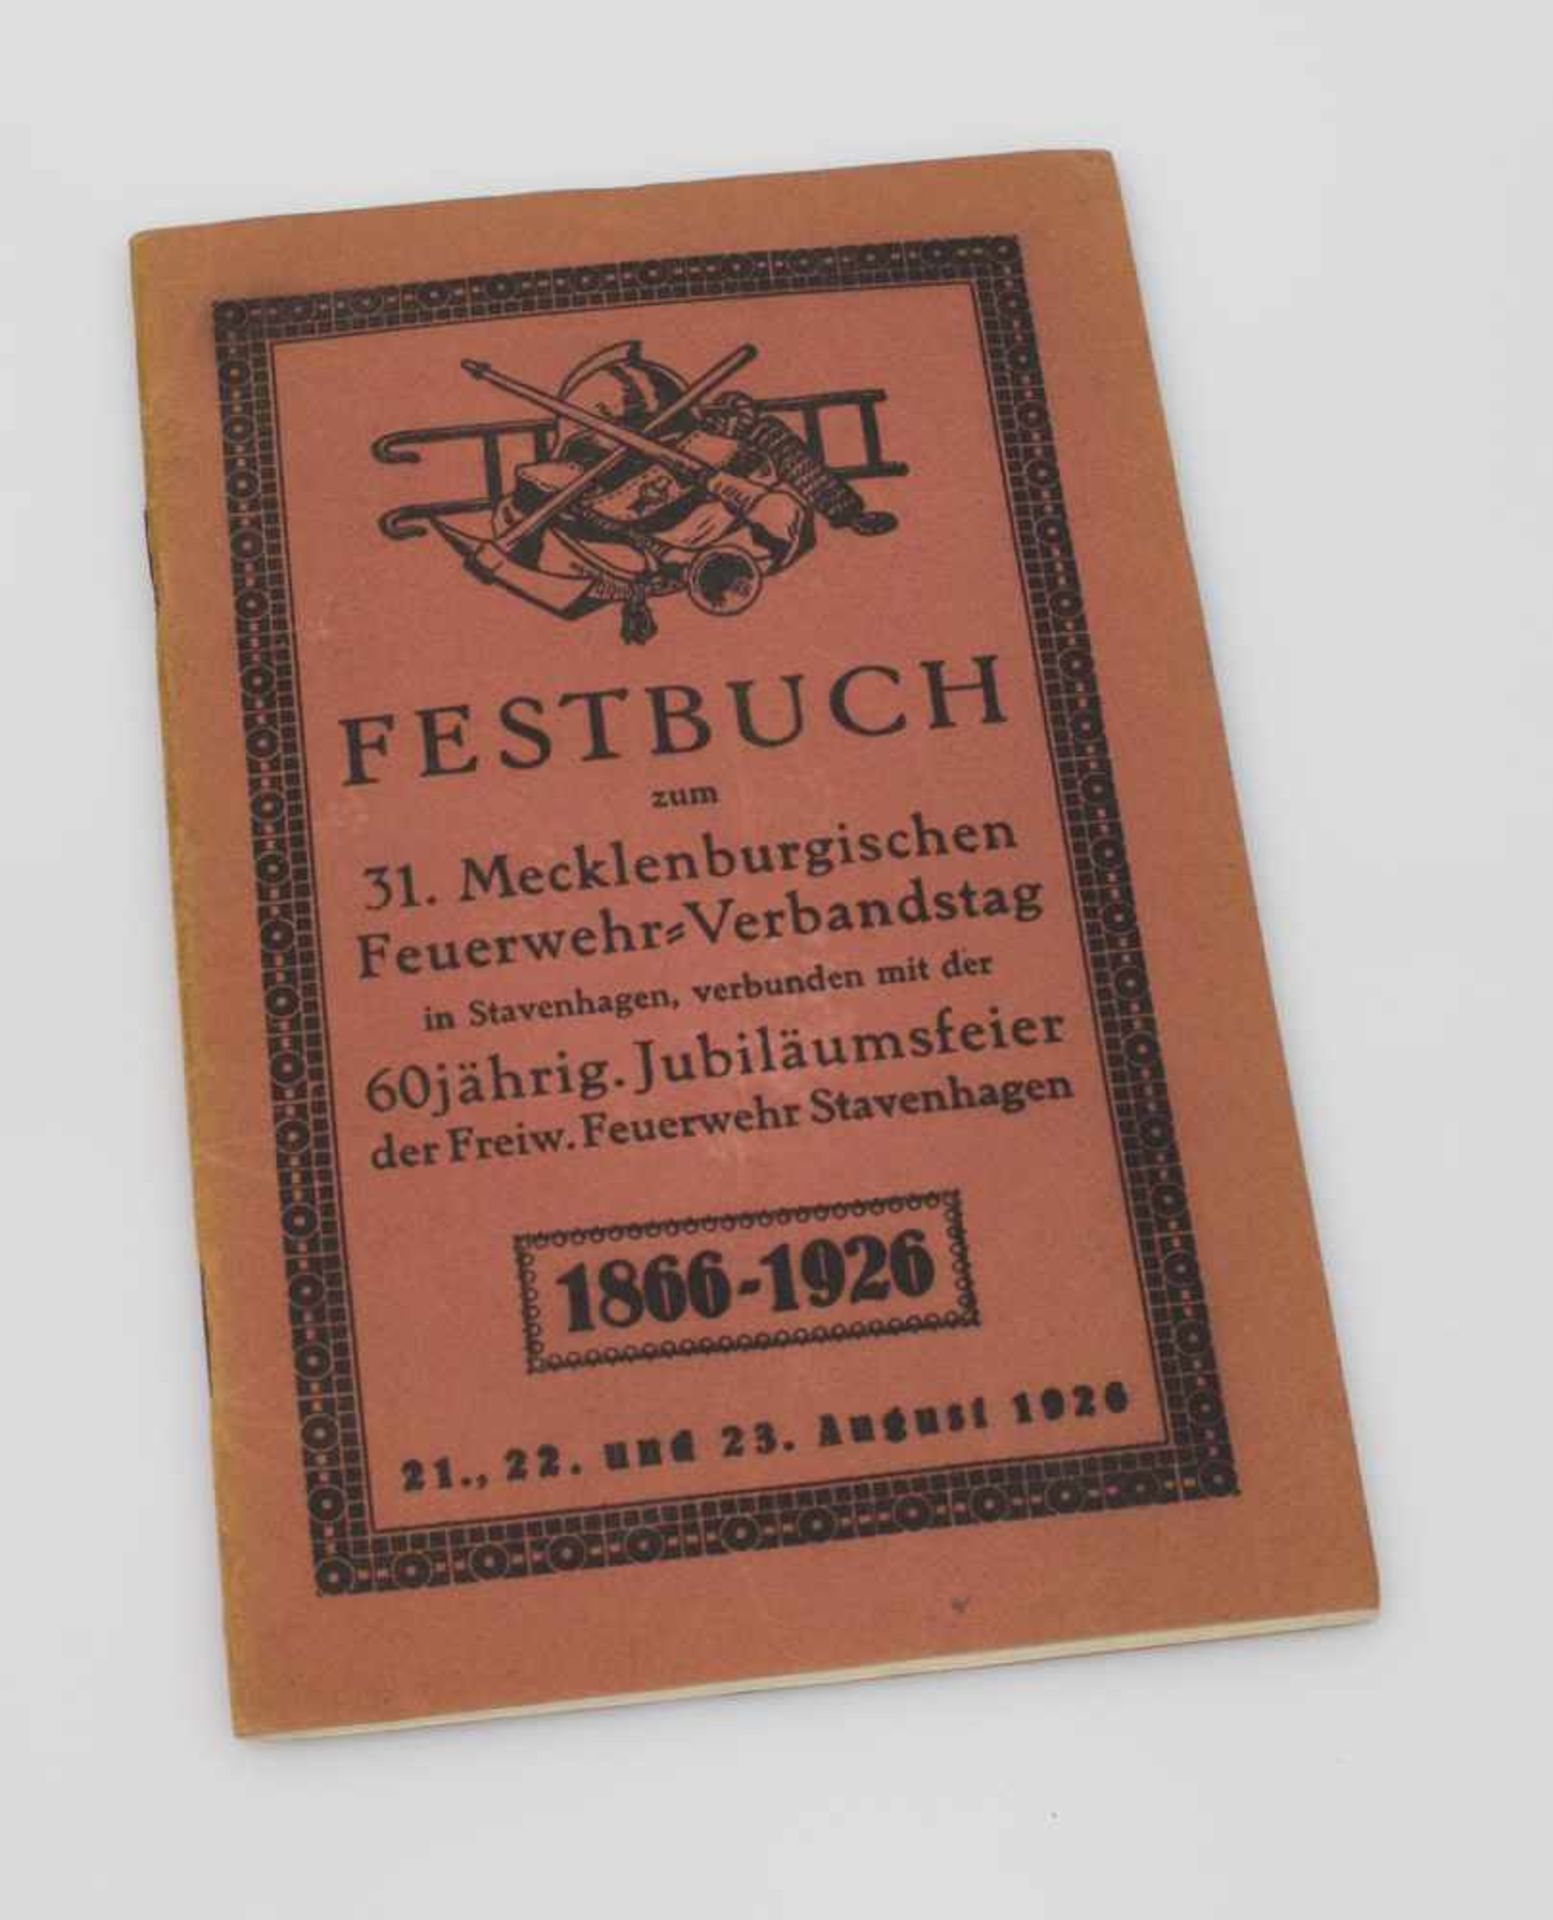 Herausgeber "Festbuch zum 31. Mecklenburgischen Feuerwehr-Verbandstag" - in Stavenhagen August 1926,